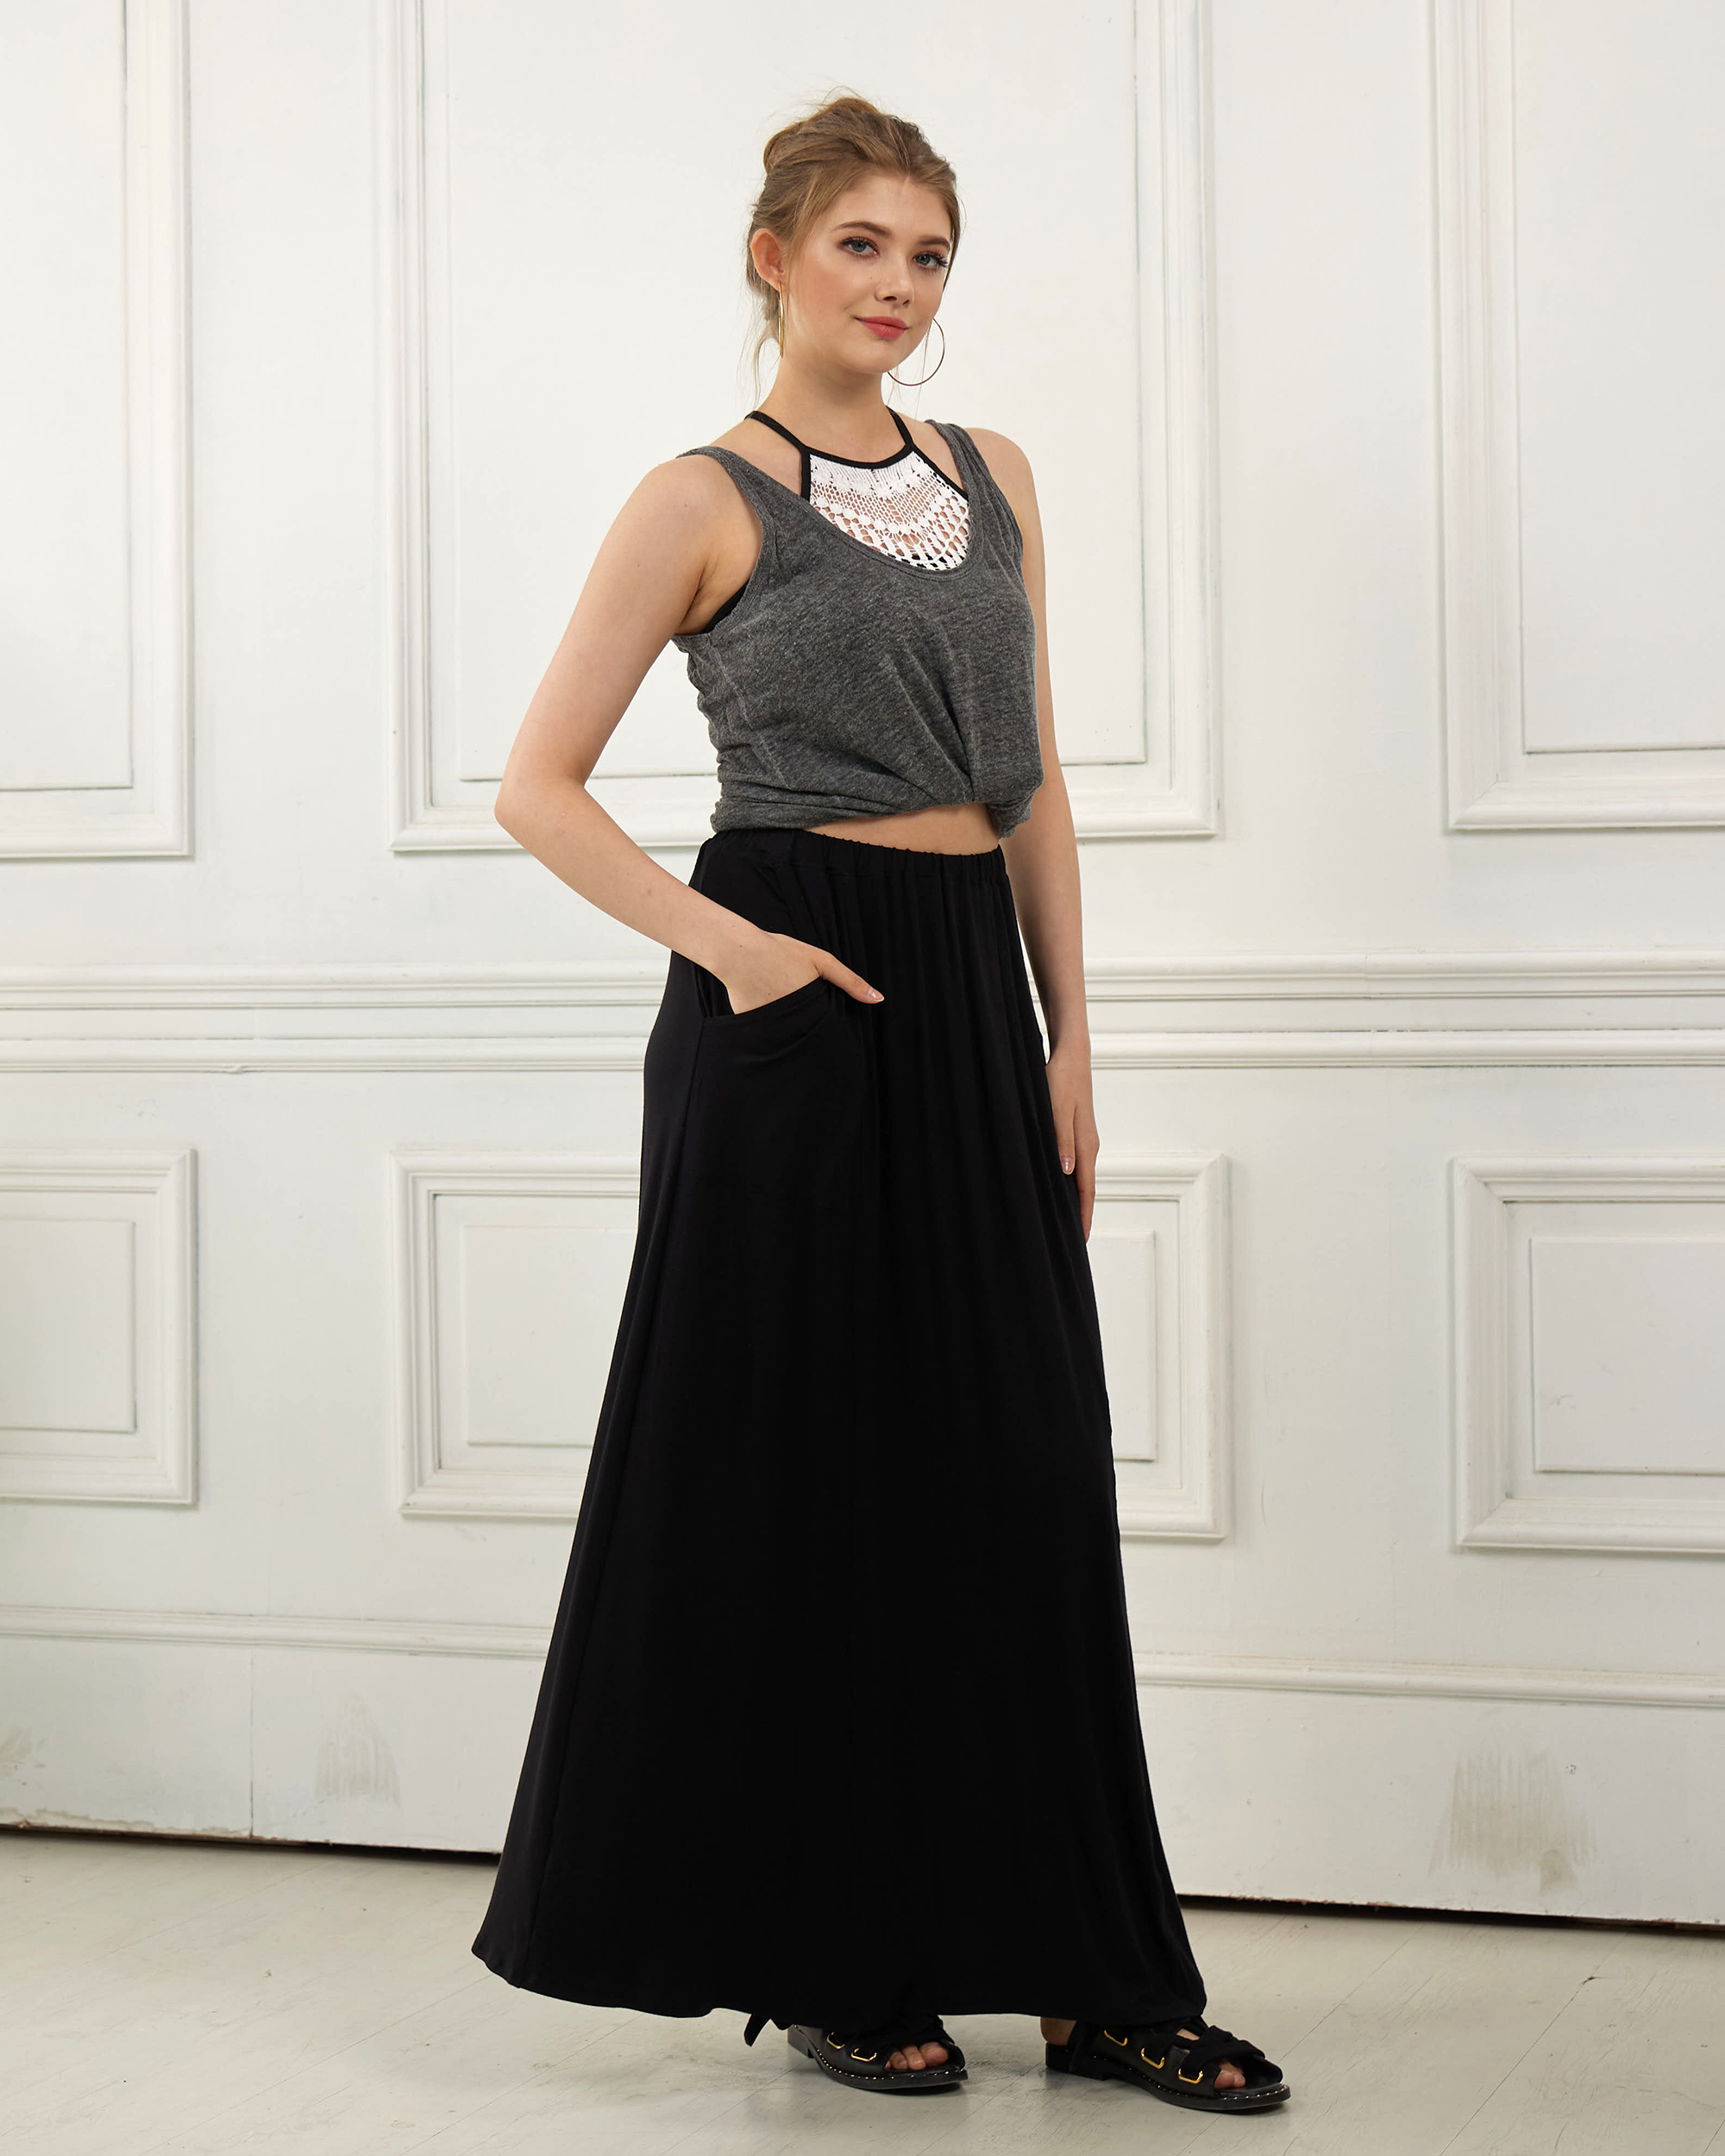 Black Maxi Skirt - Soft & Lightweight Design